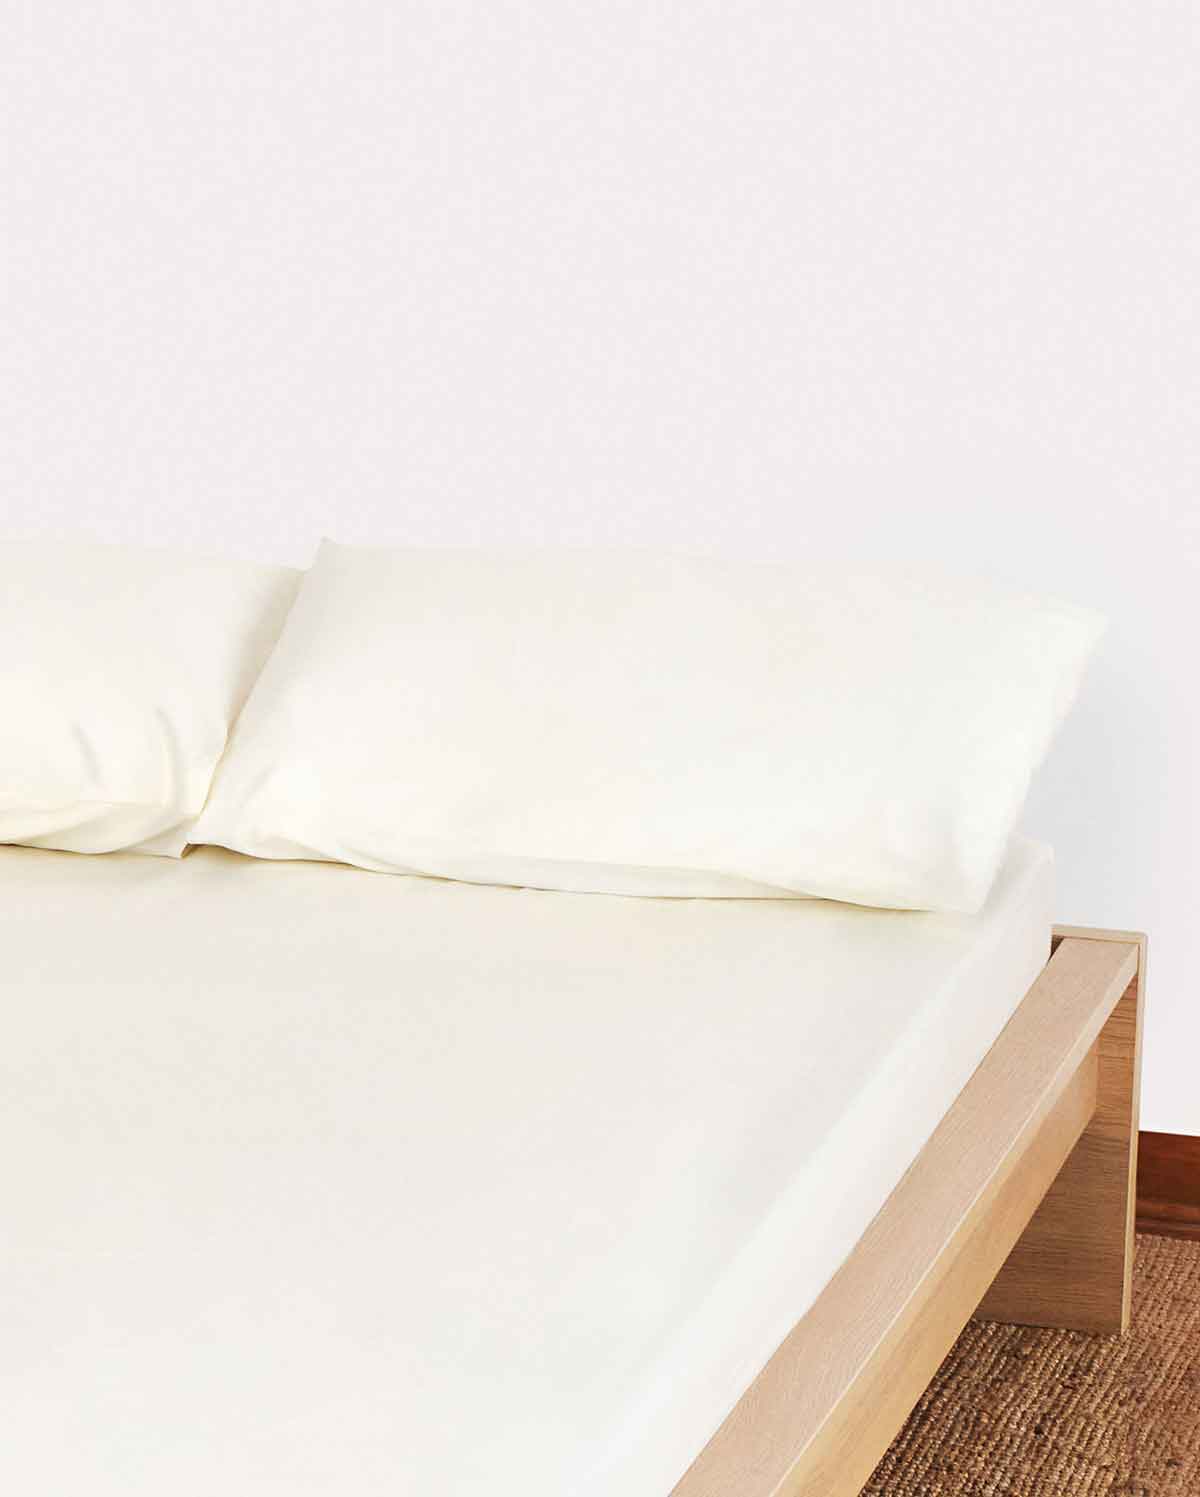 Lavish Sateen Pillowcase 2pcs - Cream